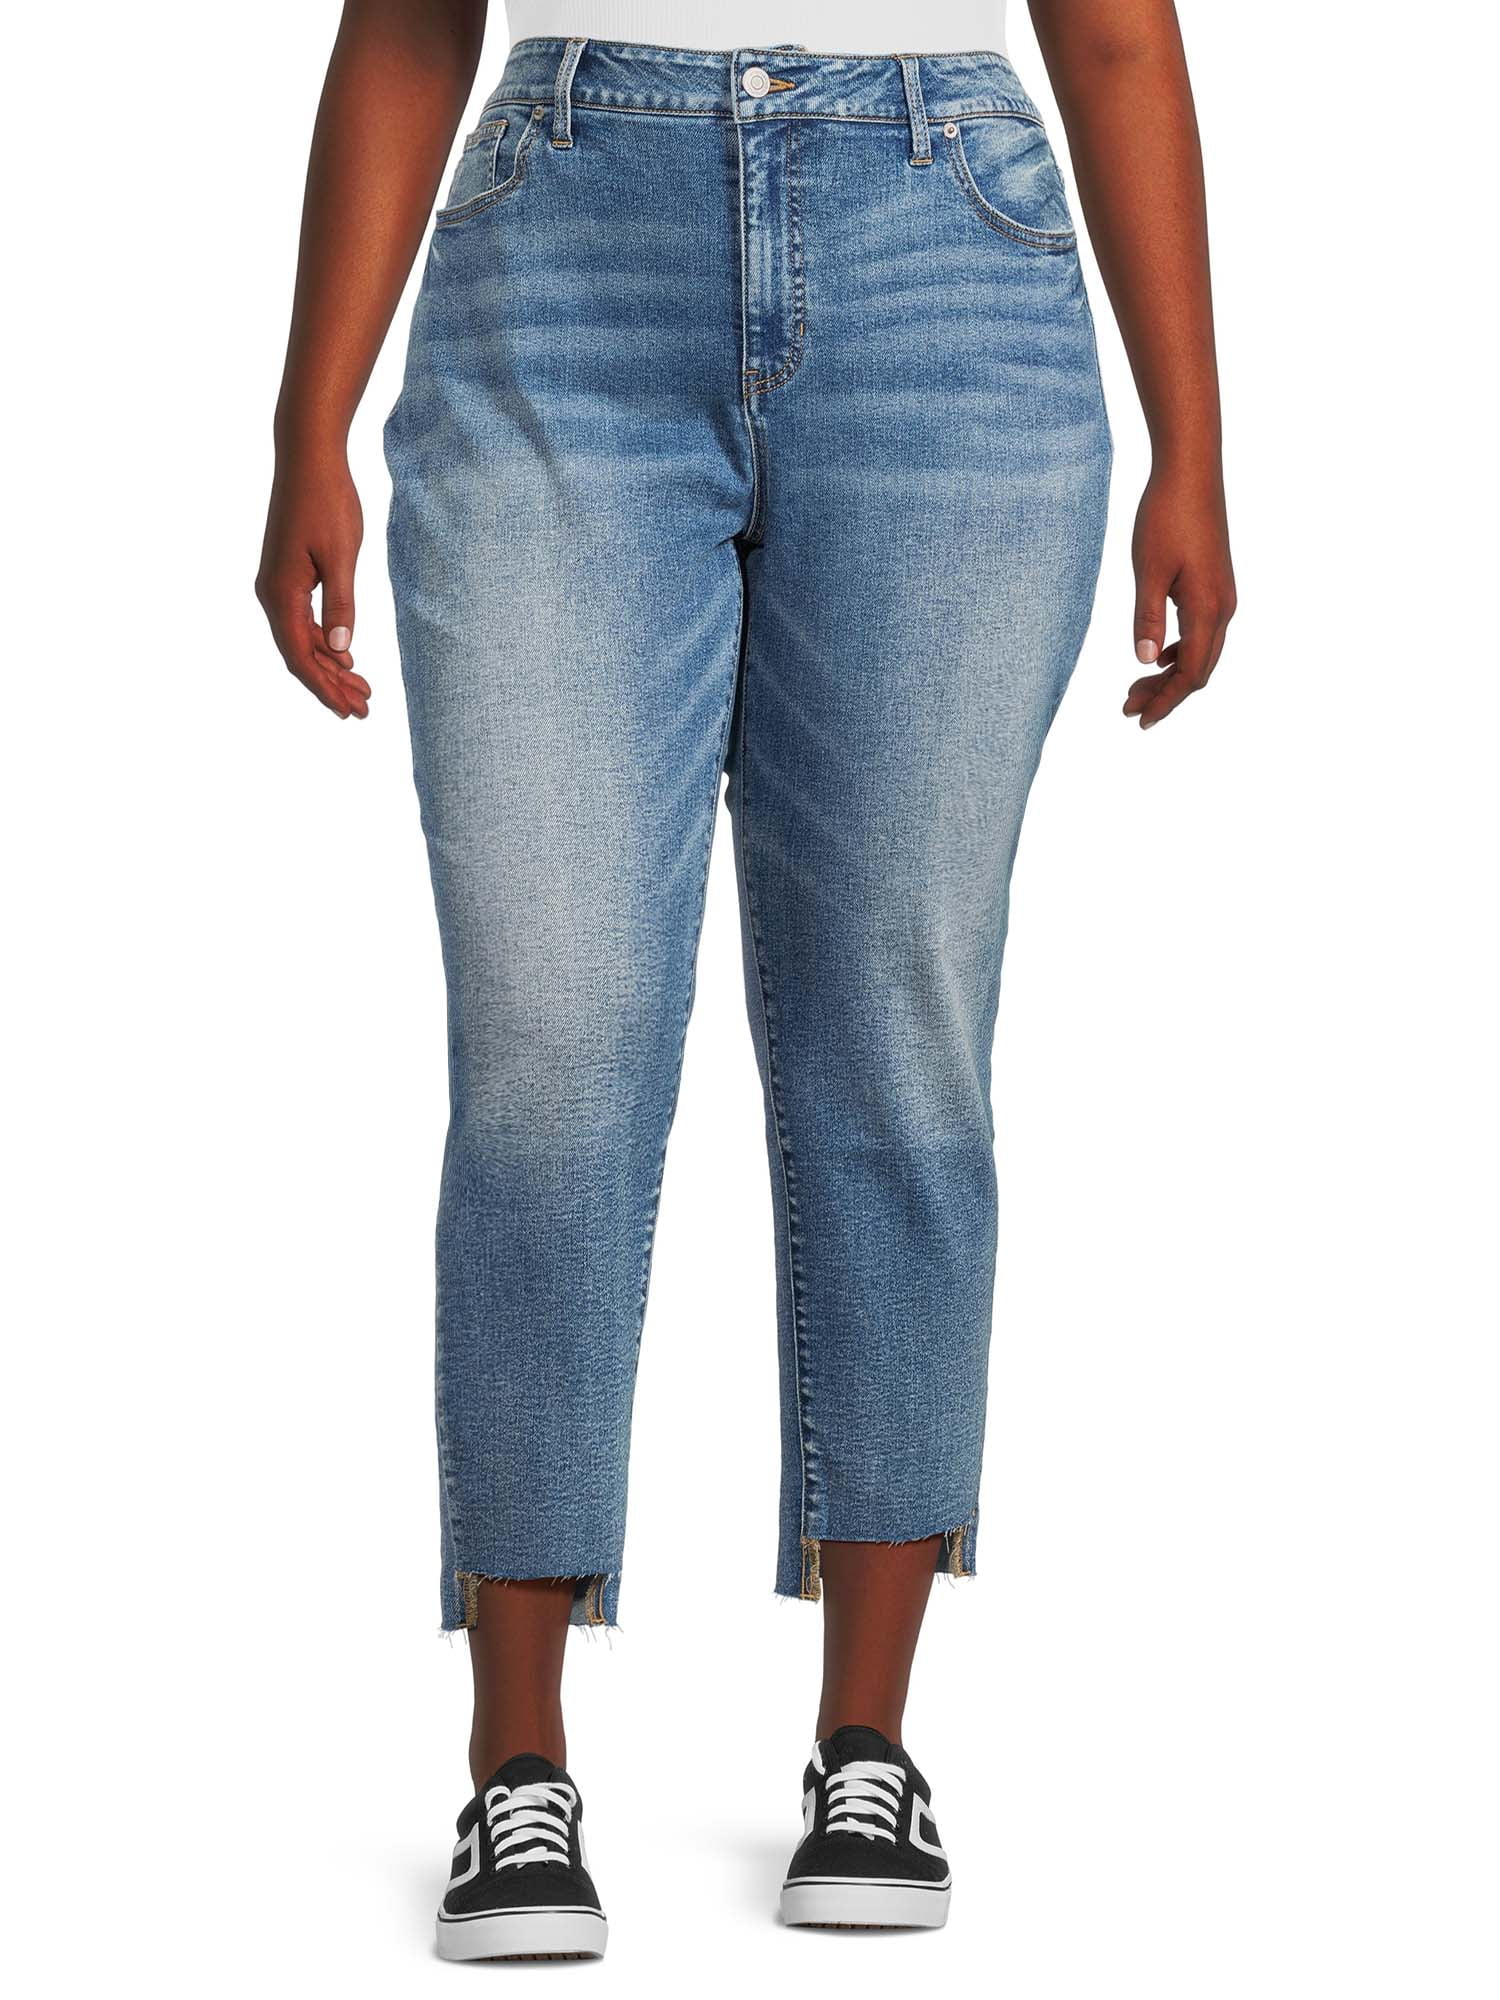 Terra & Sky Women's Plus Size Step Hem Straight Leg Jeans, 27 Inseam,  Sizes 16W-26W 